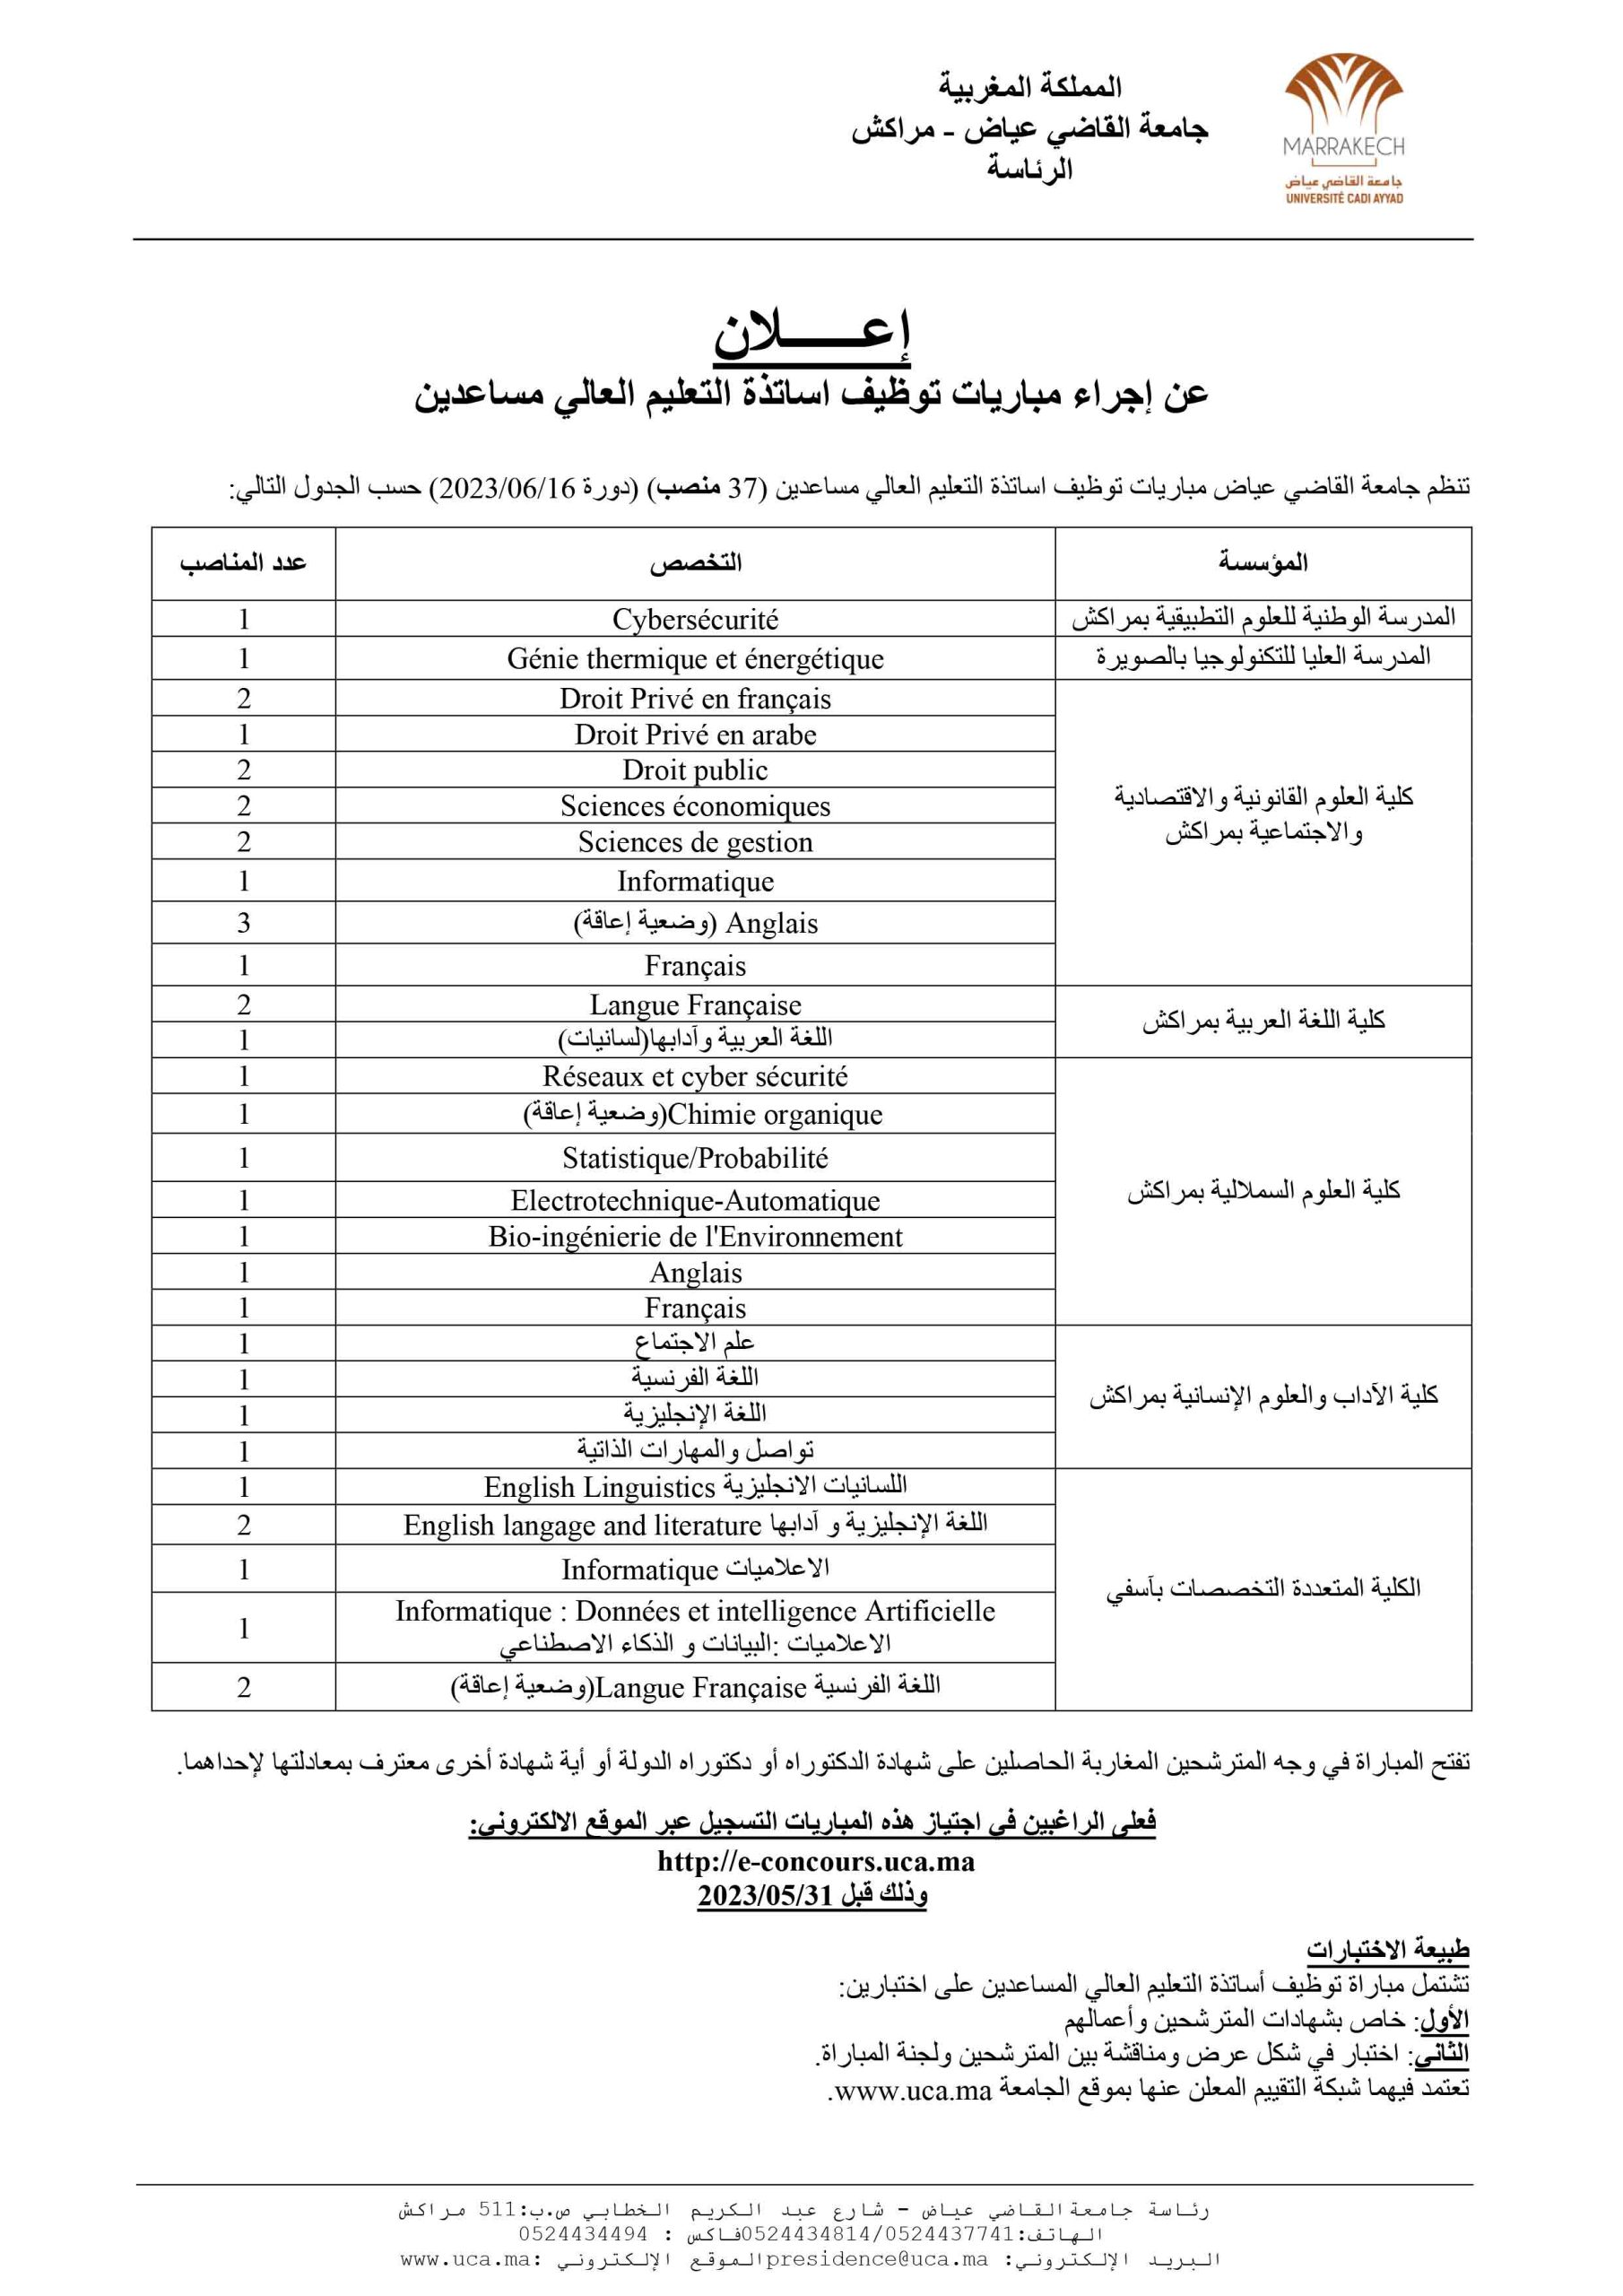 مباراة توظيف 37 أستاذ للتعليم العالي مساعدين بجامعة القاضي عياض مراكش 2023